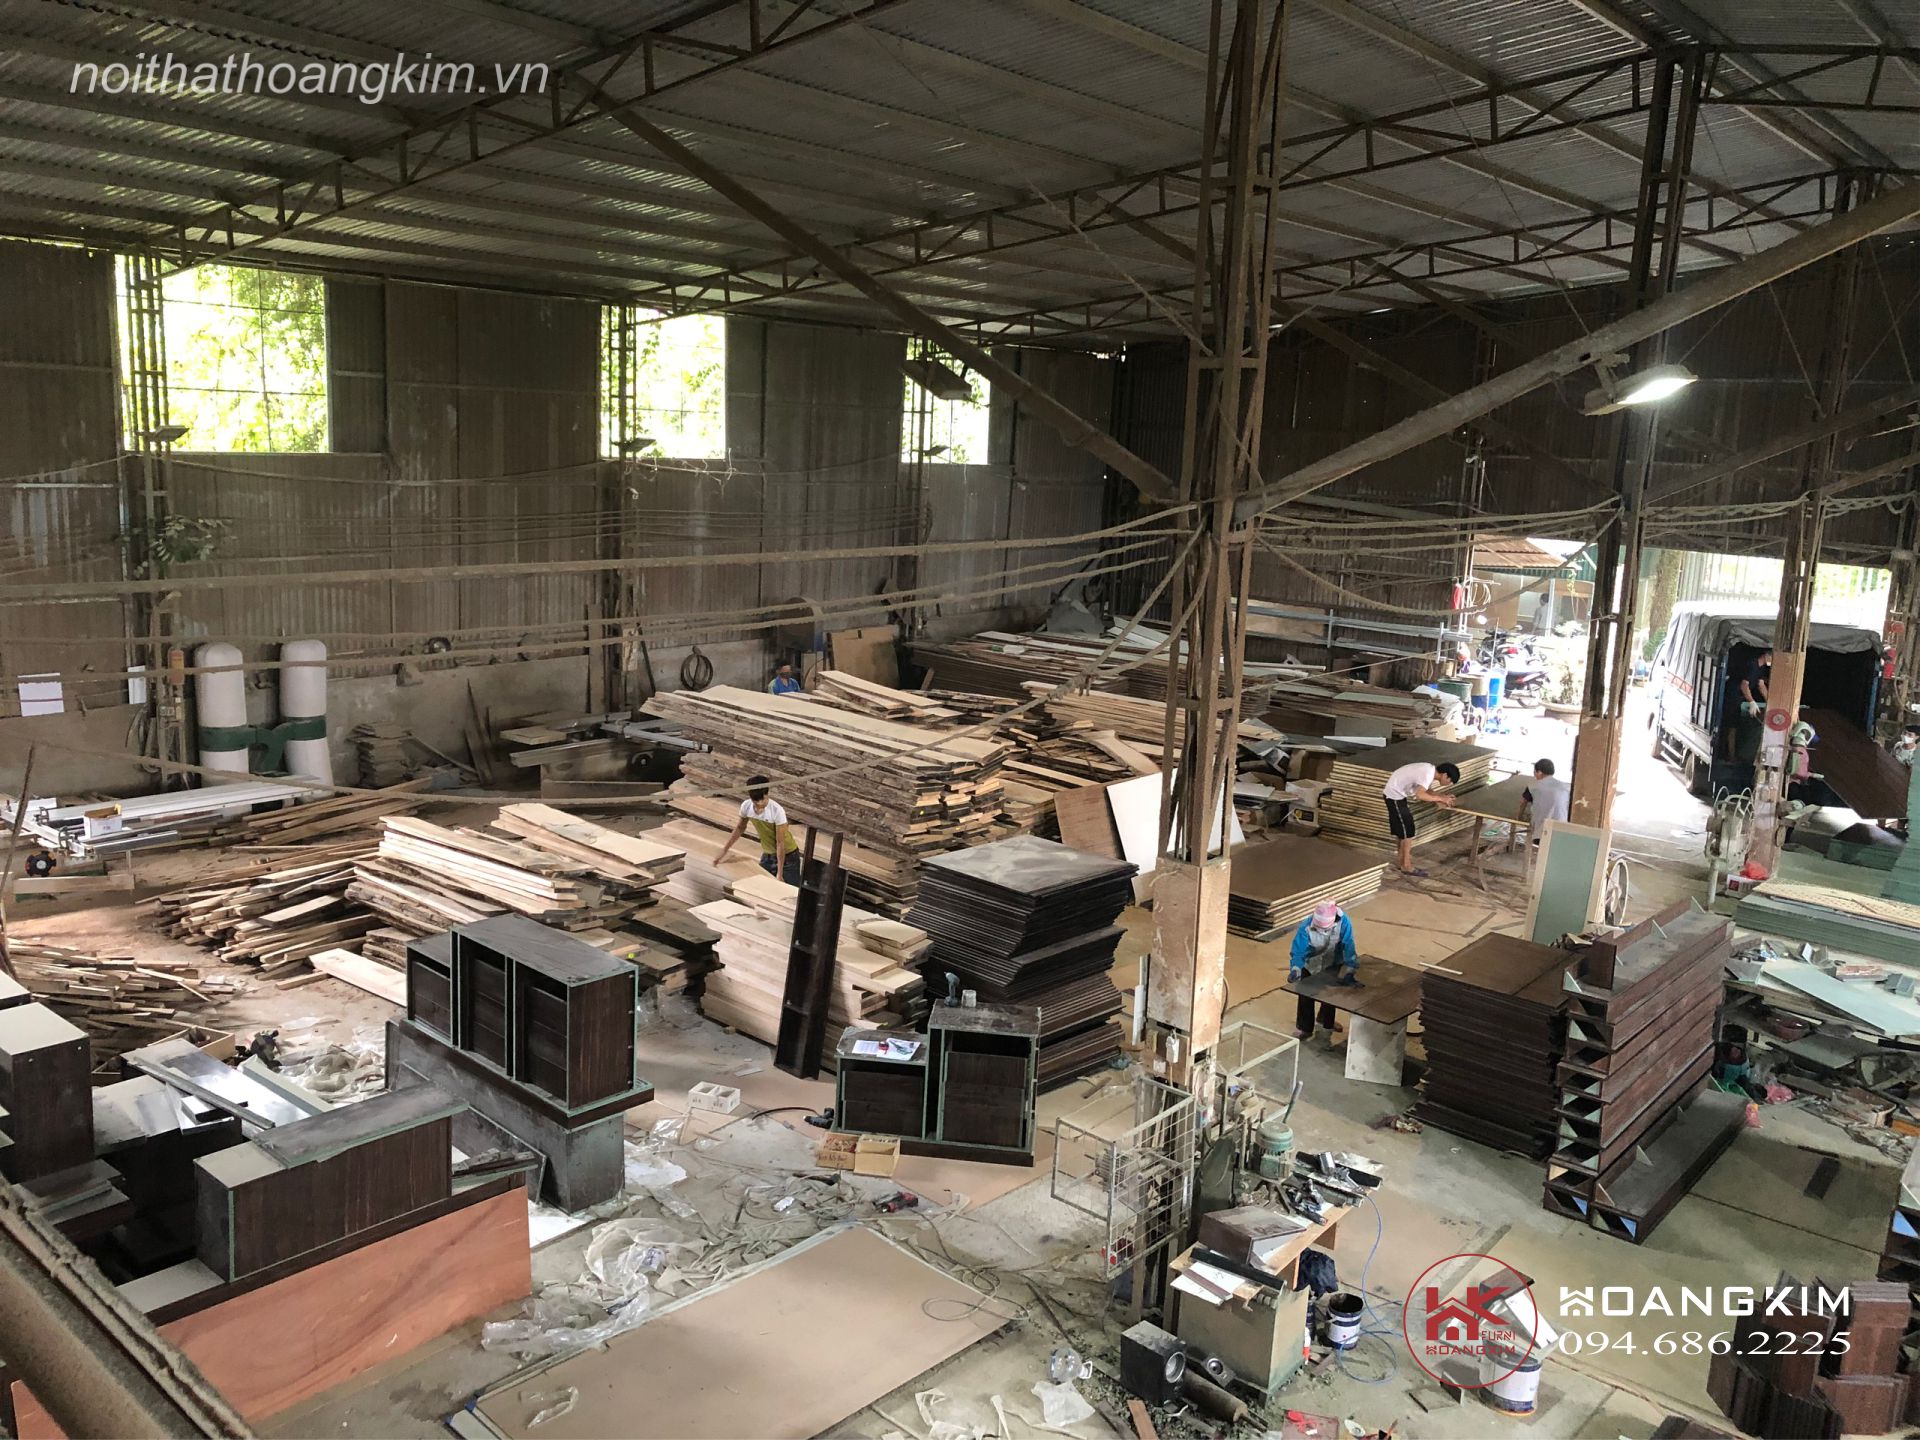 Xưởng sản xuất đồ gỗ tại Hà Nội